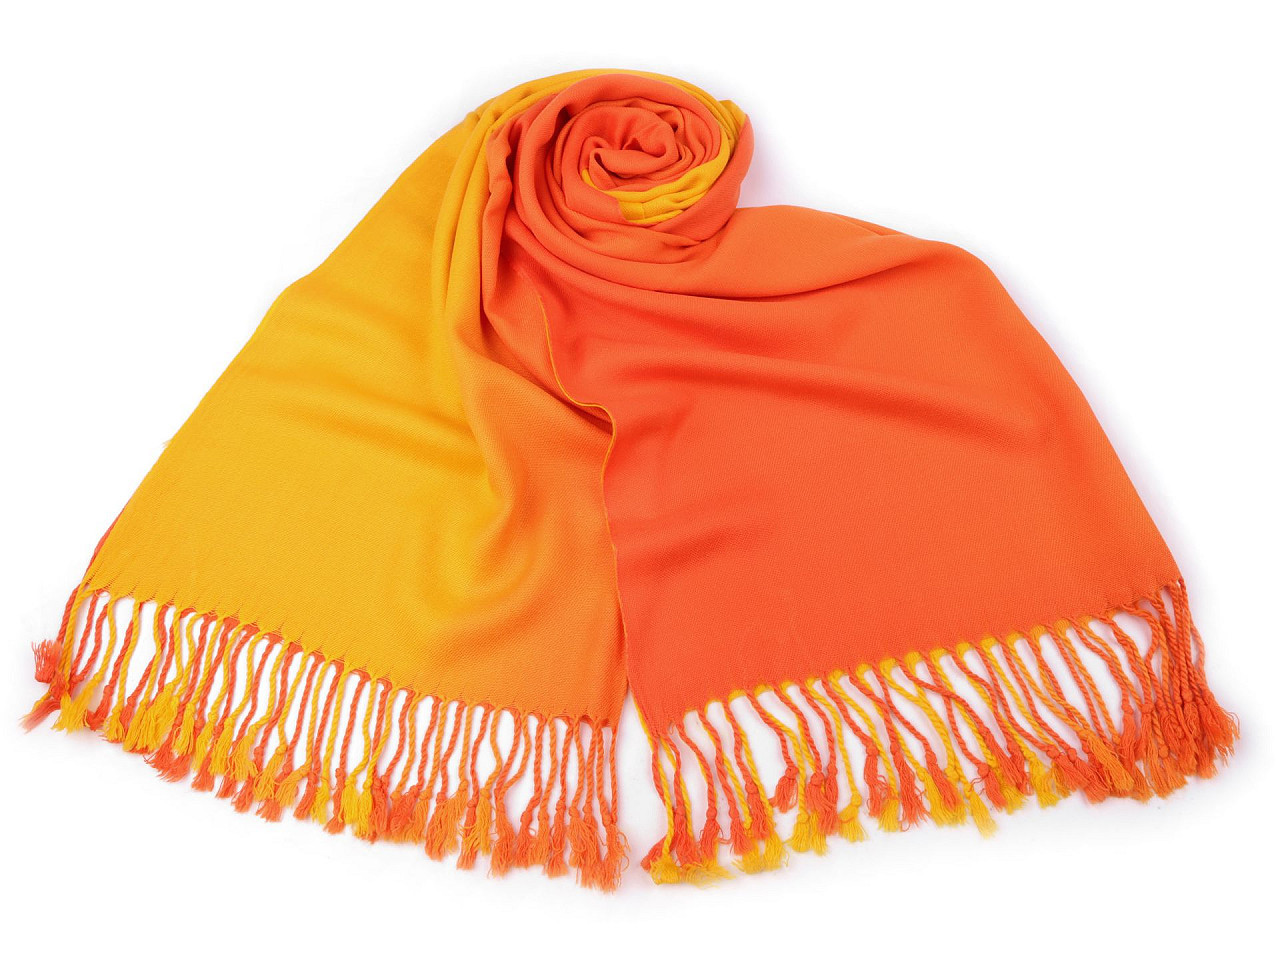 Šátek / šála ombré s třásněmi 65x180 cm, barva 18 oranžová žlutá